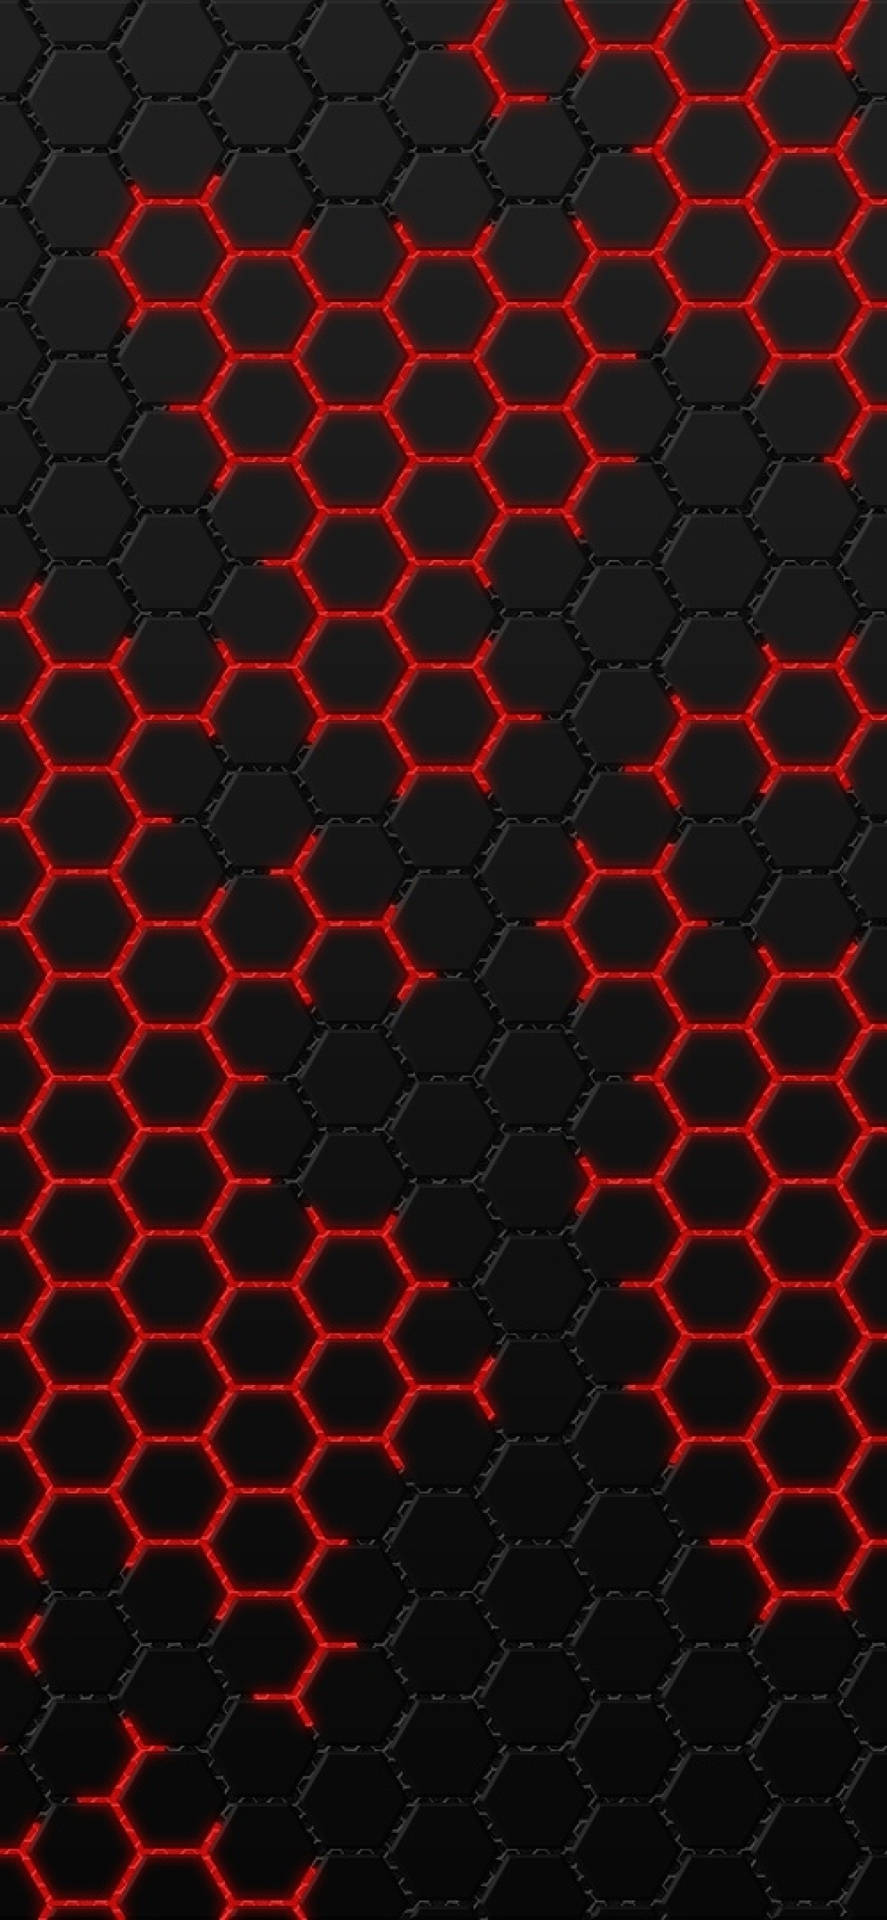 Eineschwarze Und Rote Sechseckige Muster-tapete Wallpaper